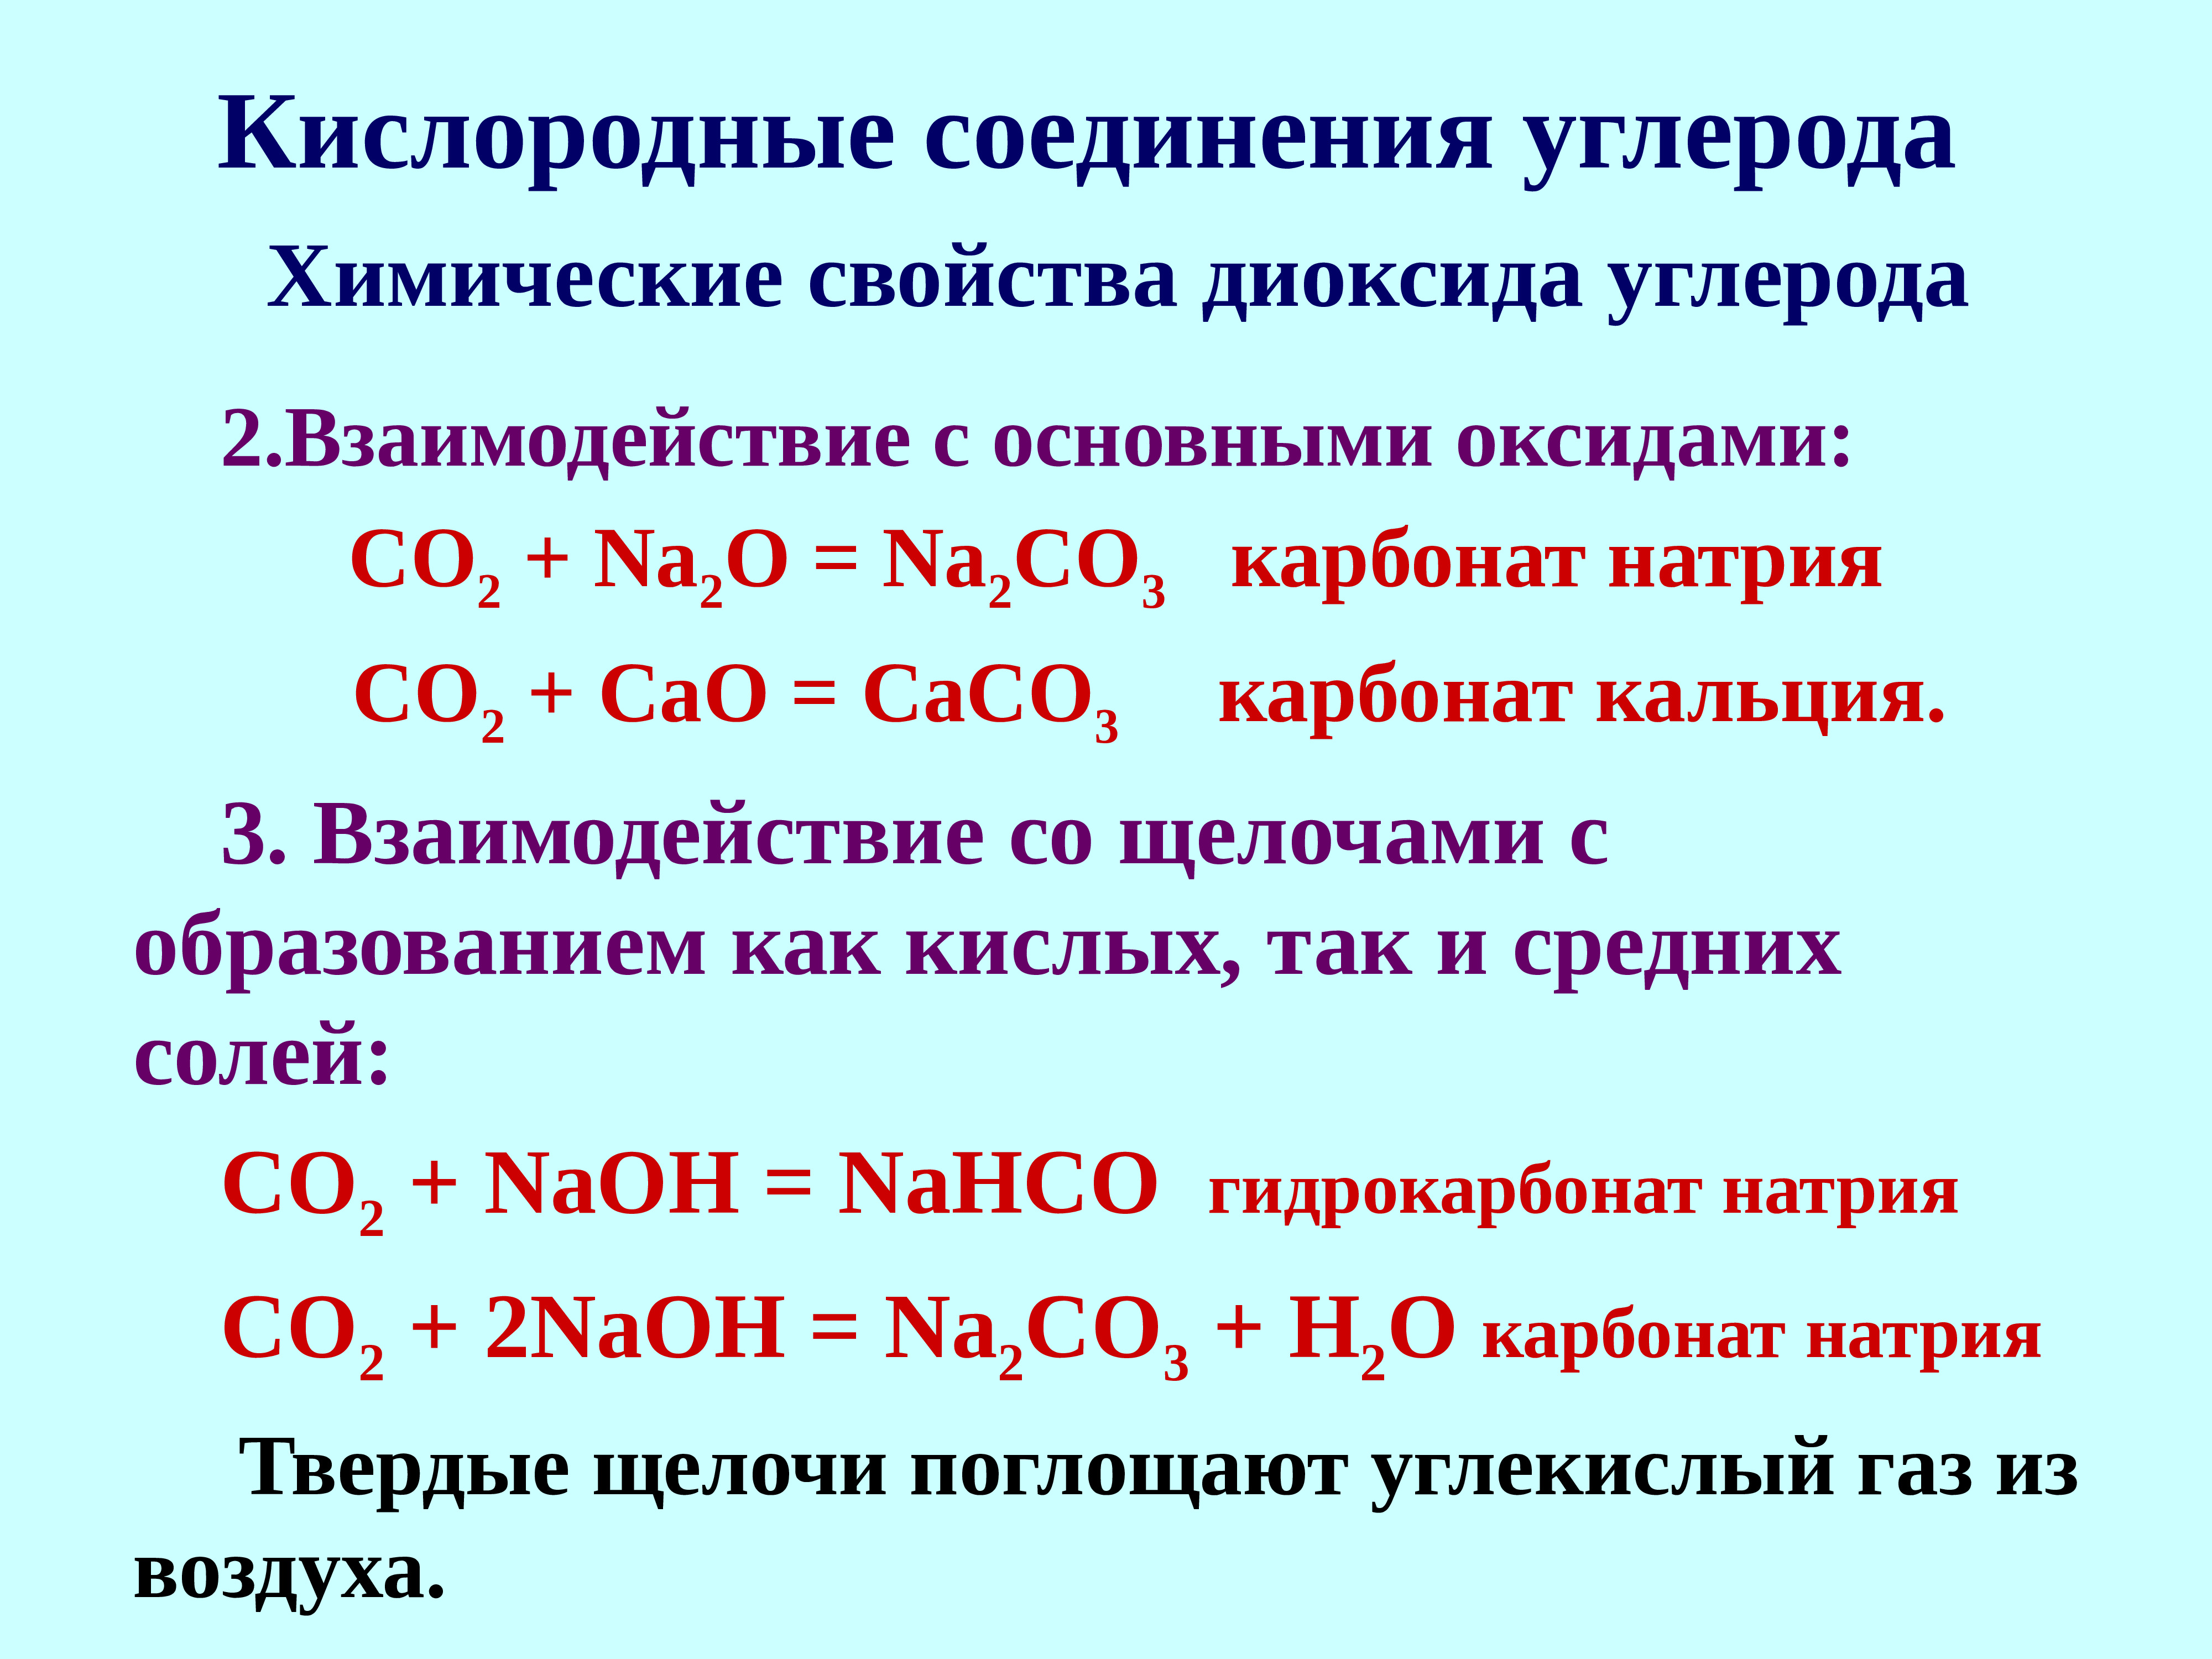 Карбонат натрия какое соединение. Кислородные соединения. Кислородные соединения углерода. Карбонат кальция в гидрокарбонат кальция. Карбонат кальция и углекислый ГАЗ.